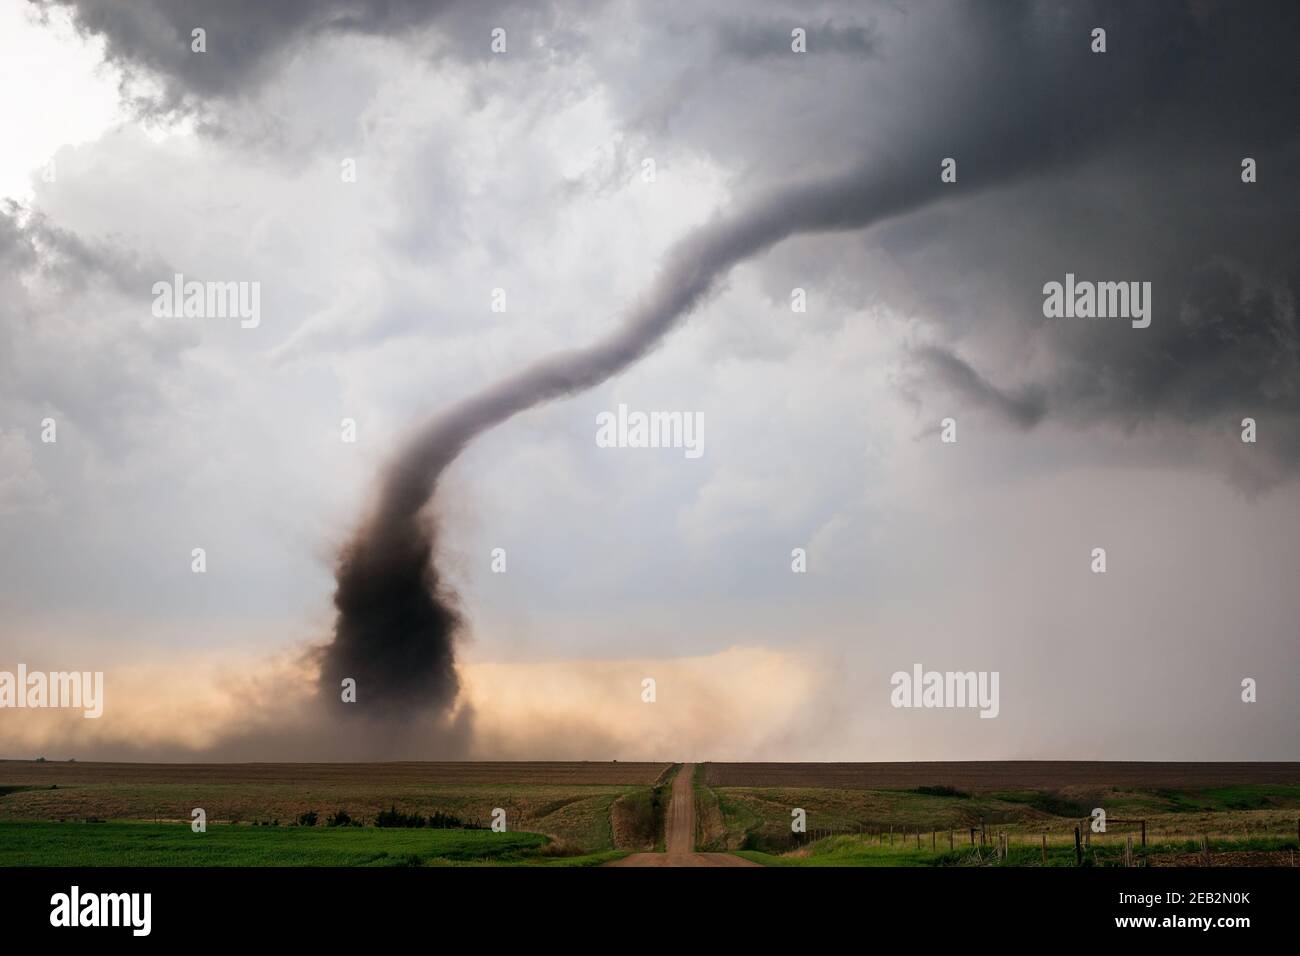 El embudo de tornado y los desechos se nublan bajo una tormenta de supercélulas en McCook, Nebraska, EE.UU Foto de stock